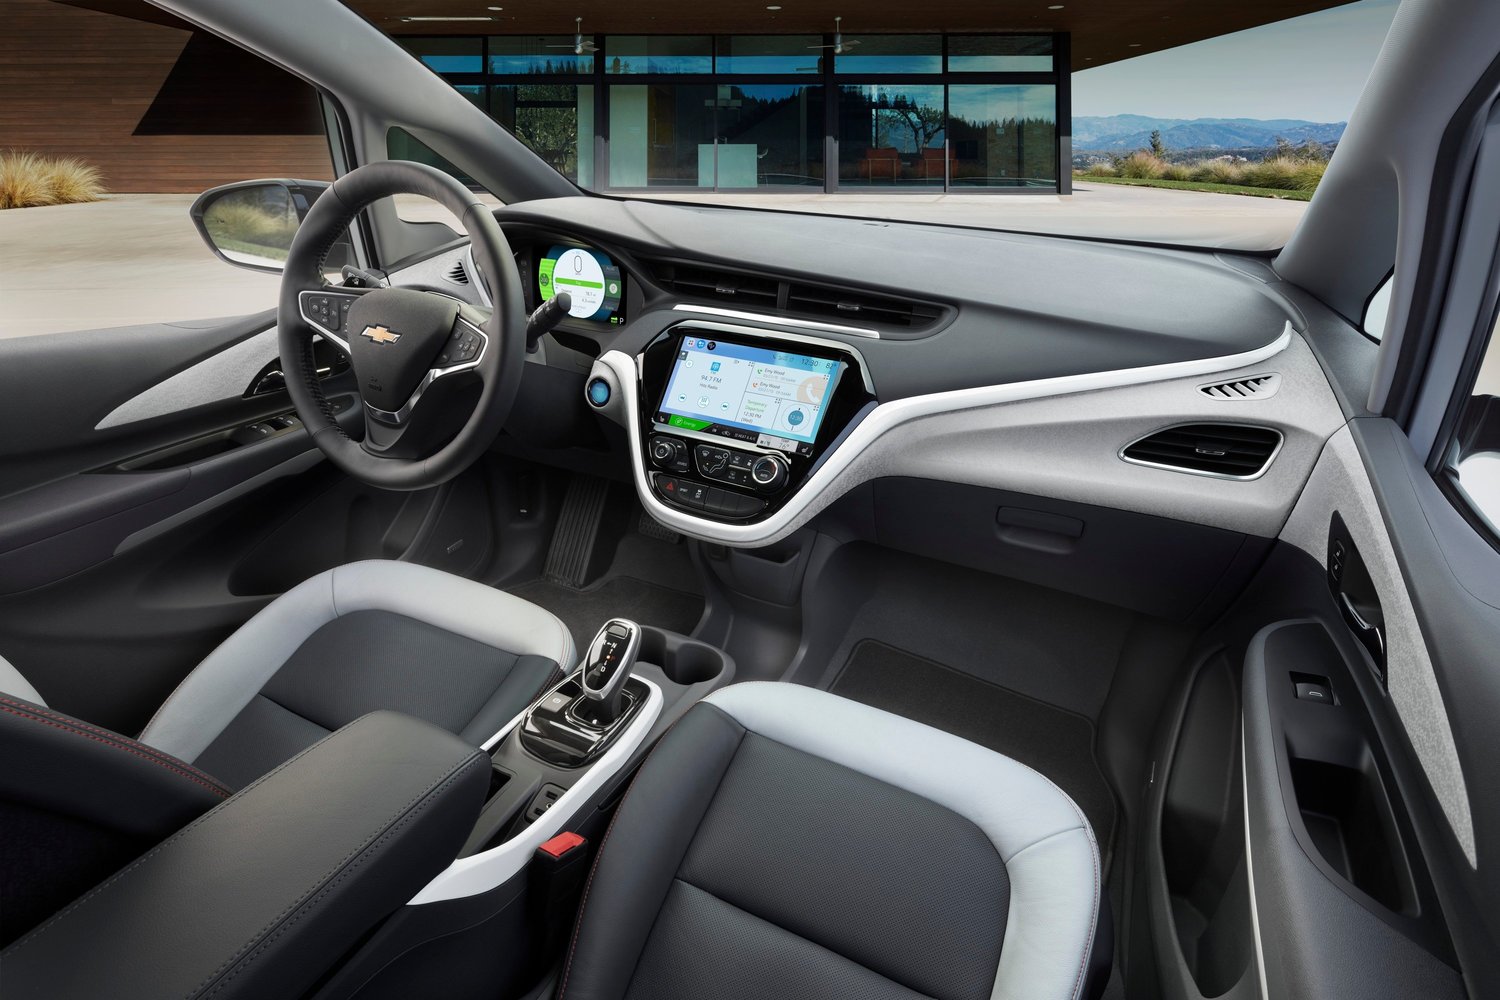 хэтчбек 5 дв. Chevrolet Bolt 2016г выпуска модификация Комплектация